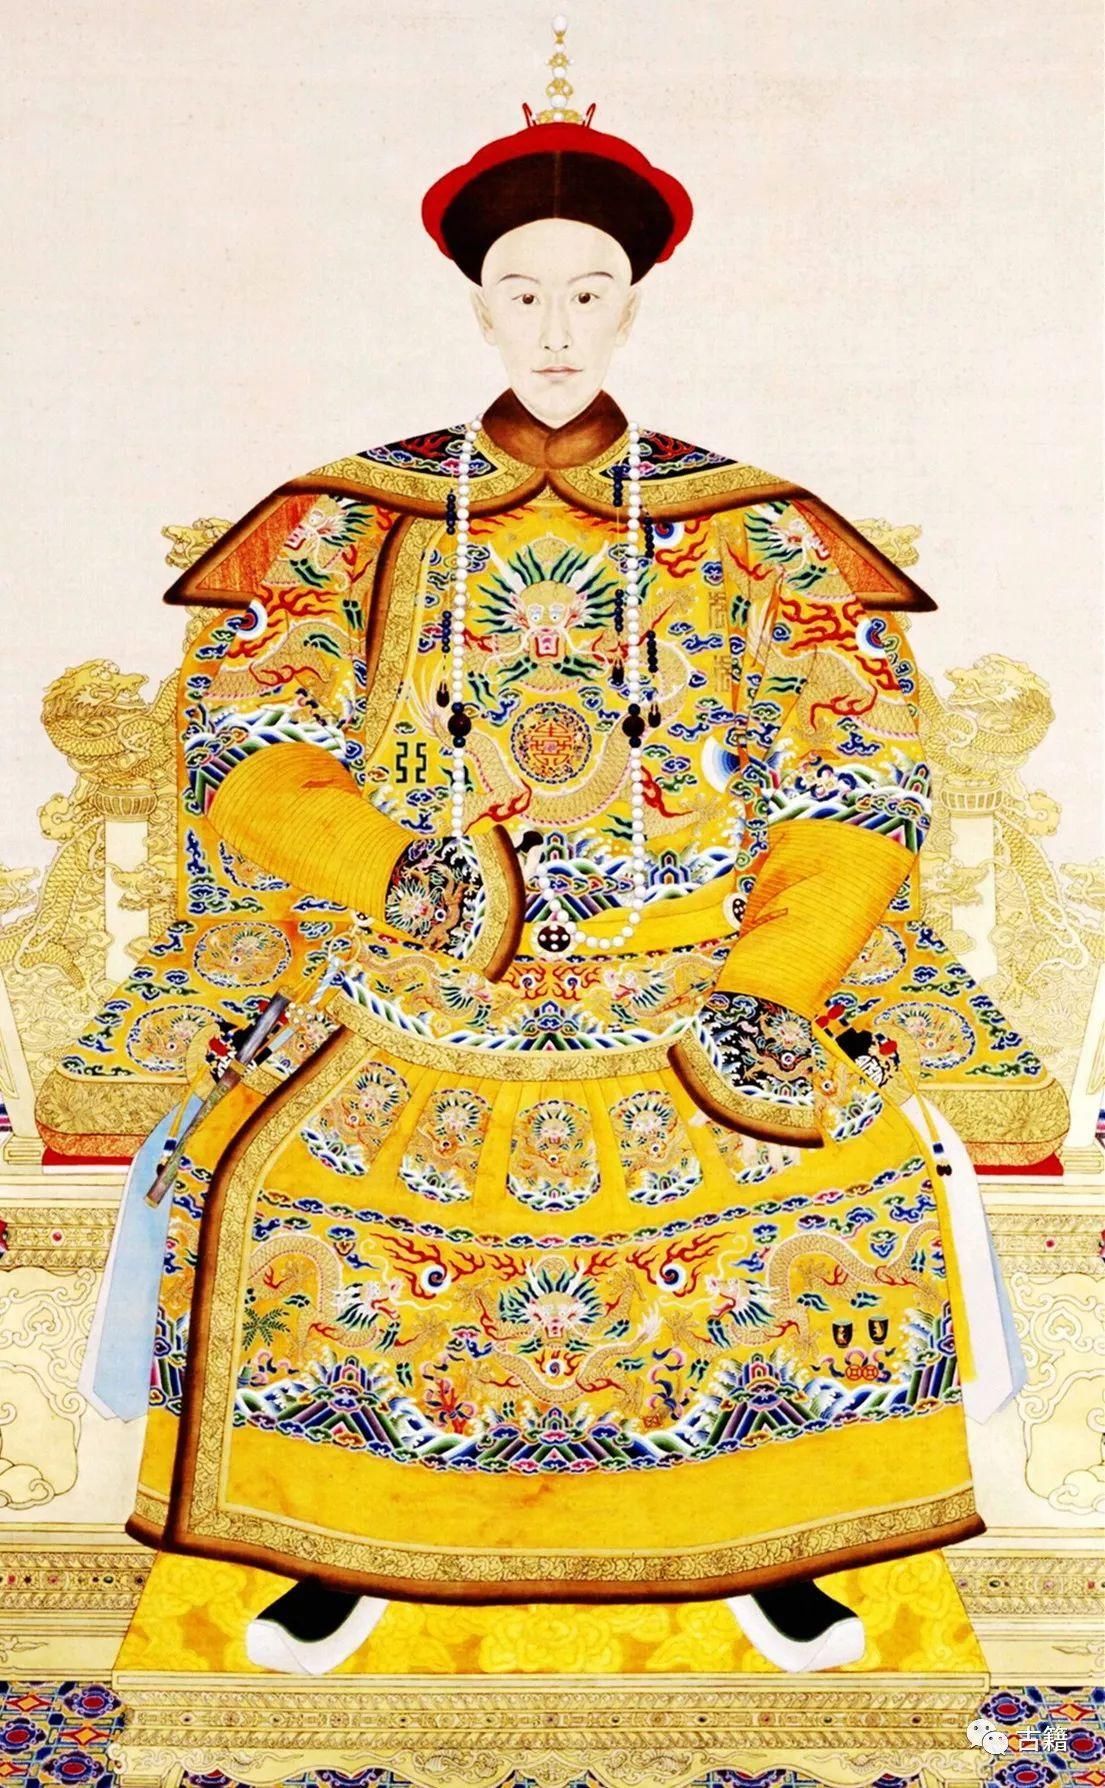 唐朝皇帝世系图,唐朝皇室族谱树状图 - 伤感说说吧